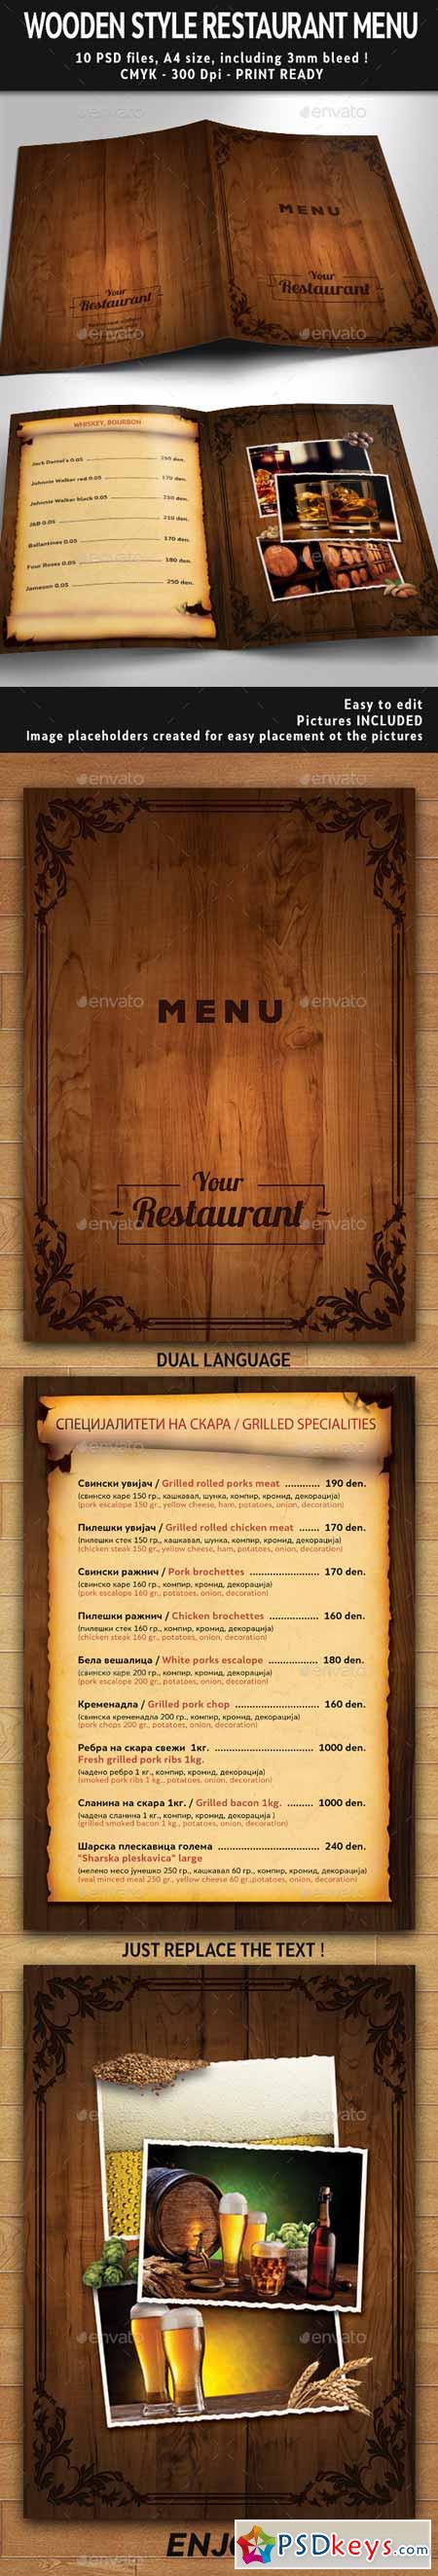 Wooden Style Restaurant Menu PSD Template 11610856